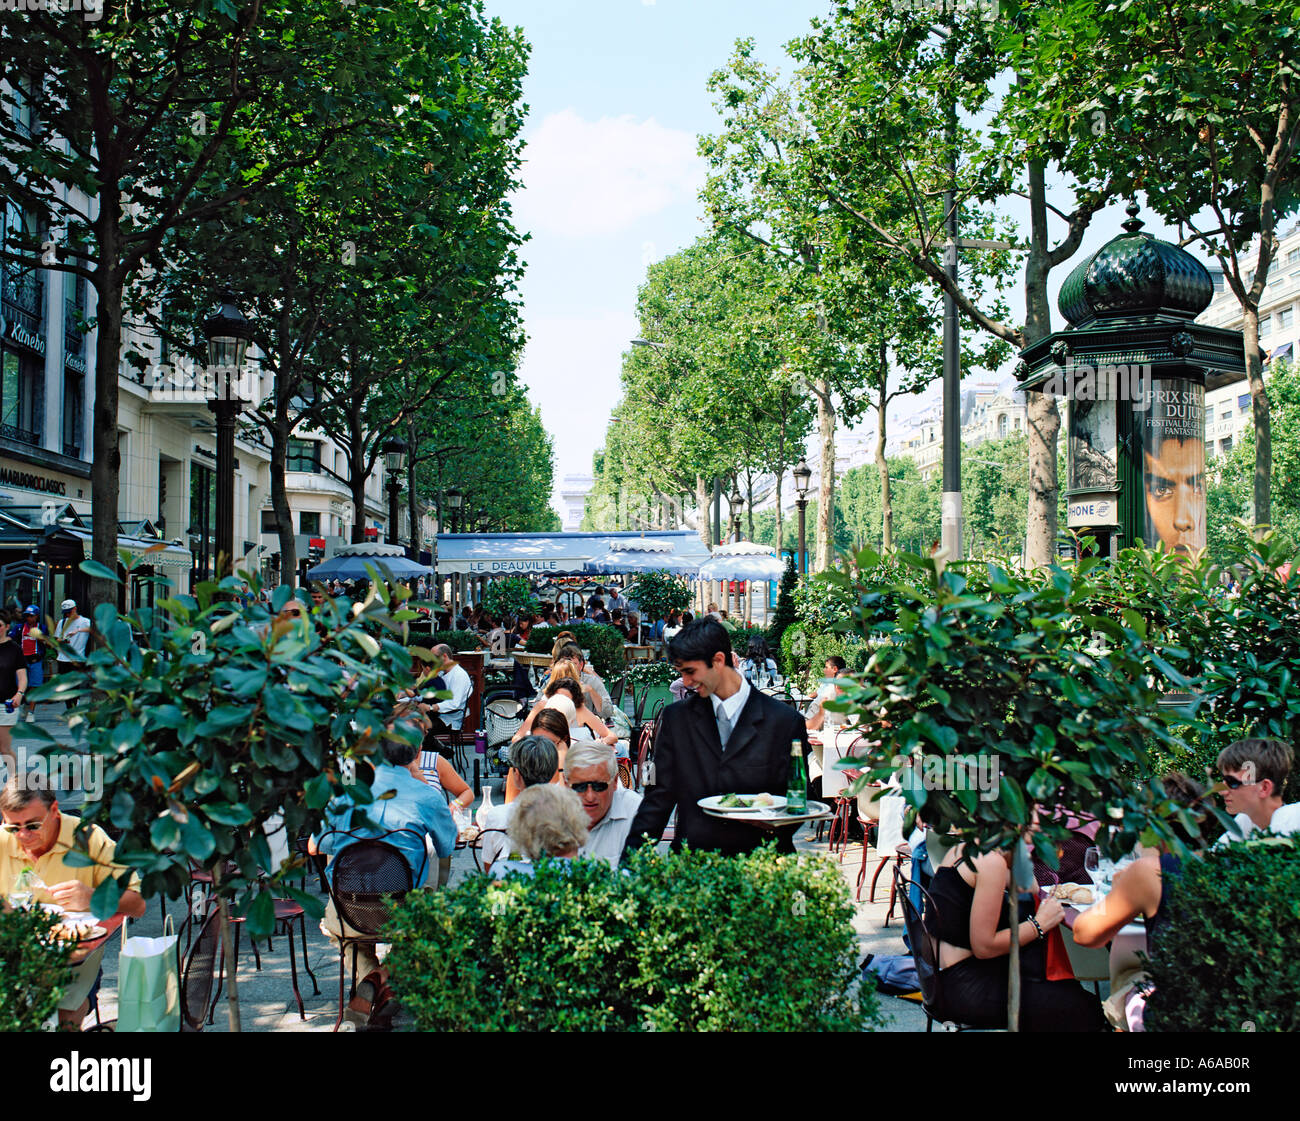 FRANCE PARIS CHAMPS ELYSEES RESTAURANTS CAFES PAVEMENT Stock Photo